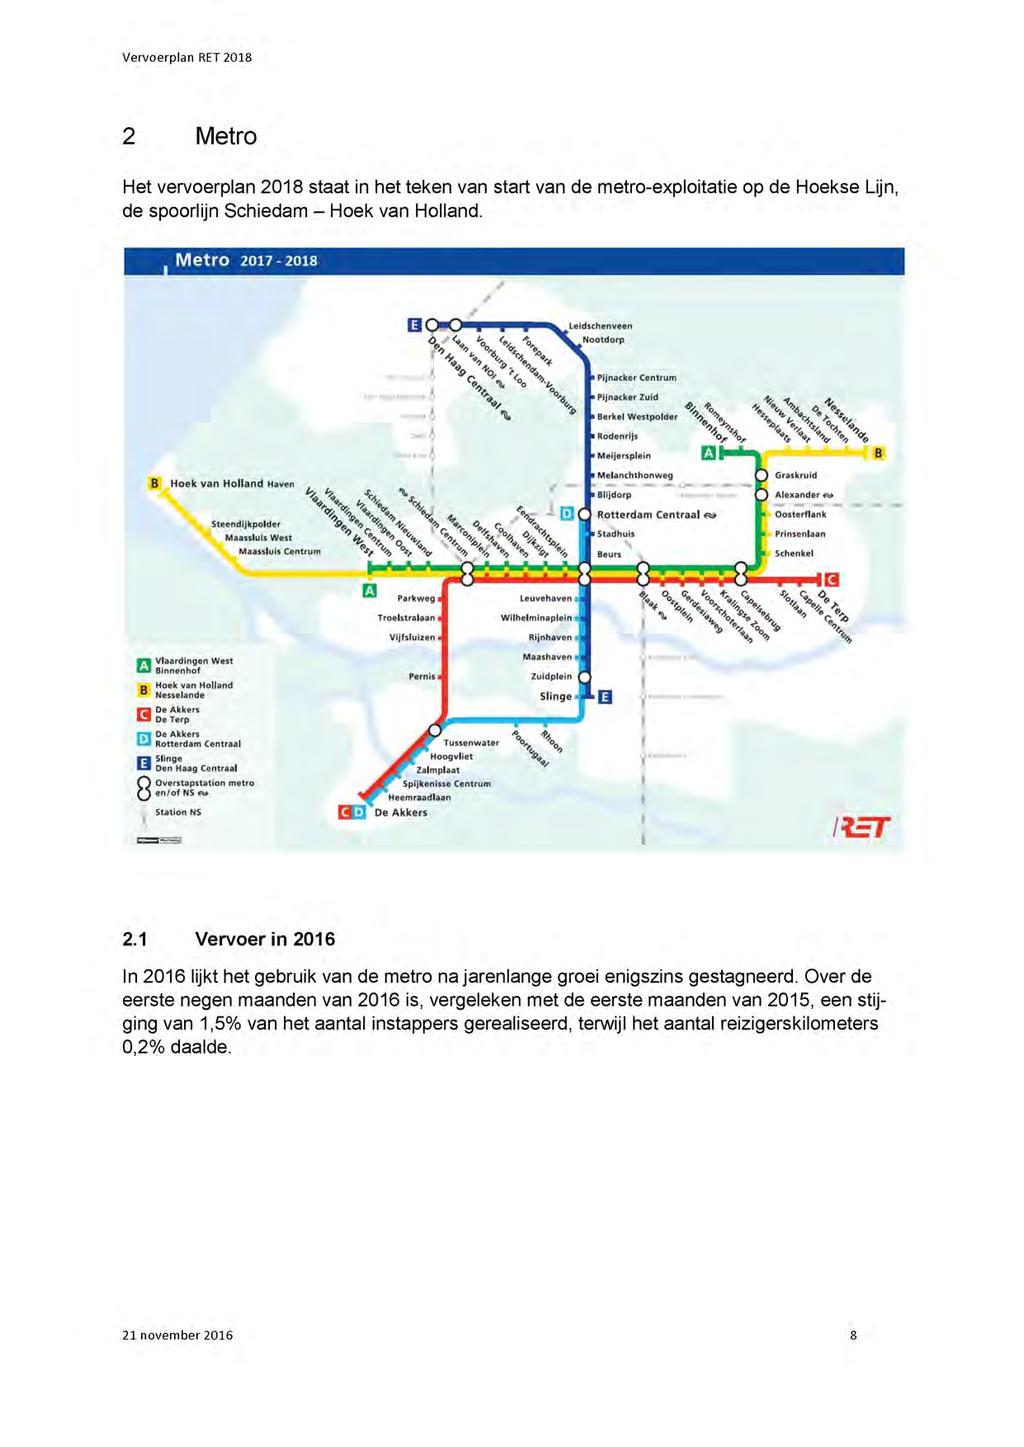 2 Het vervoerplan 2018 staat in het teken van start van de metro-exploitatie op de Hoekse Lijn, de spoorlijn Schiedam - Hoek van Holland.